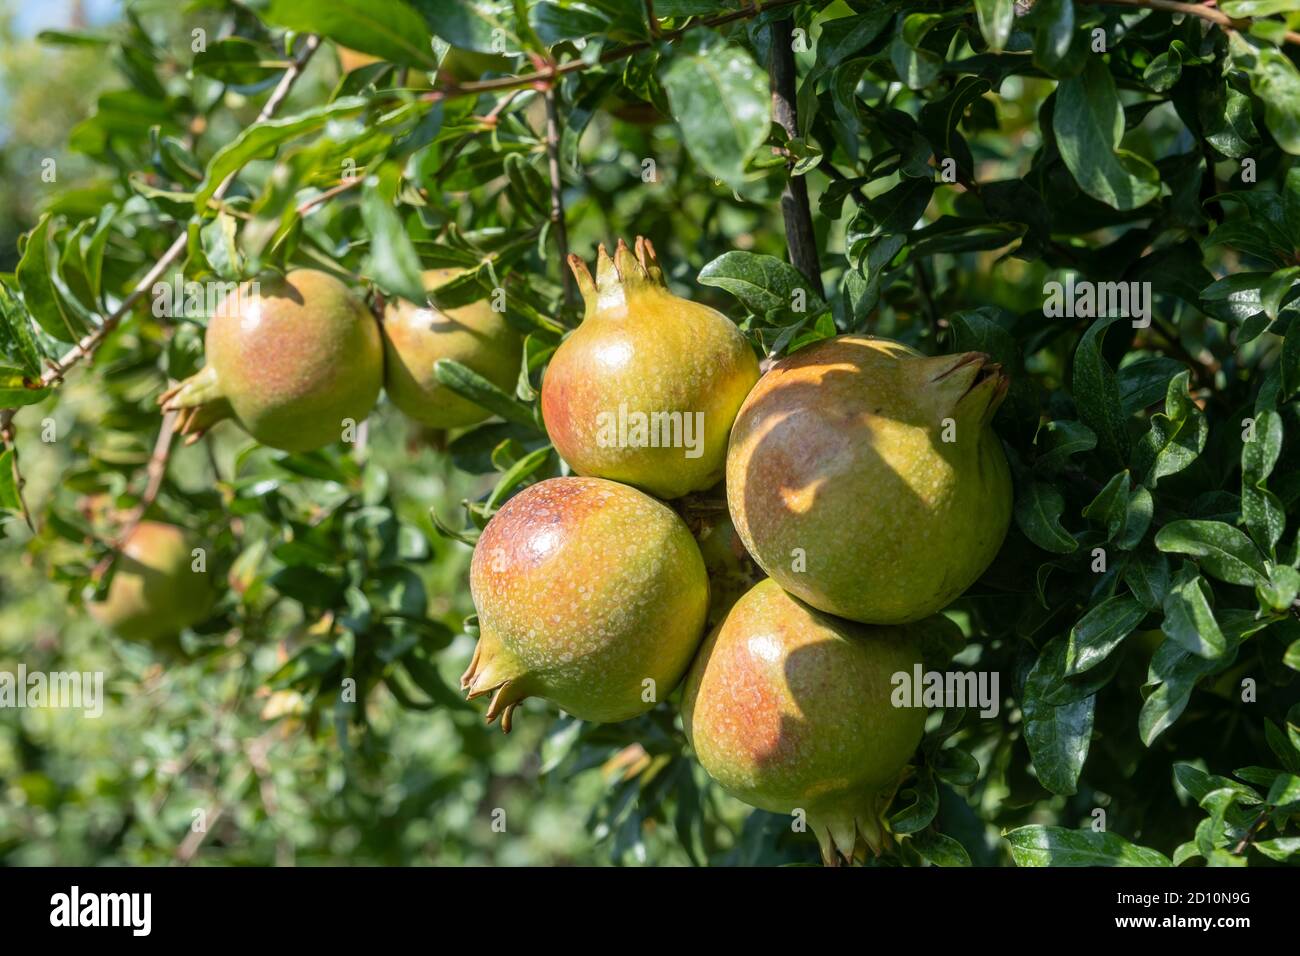 Gesundes Lifestyle-Konzept. Granatäpfel Bäume, frische Bio-Früchte voller Vitamine, Folsäure und antioxidative Eigenschaften. Reiche Ernährung Lebensmittel für V Stockfoto